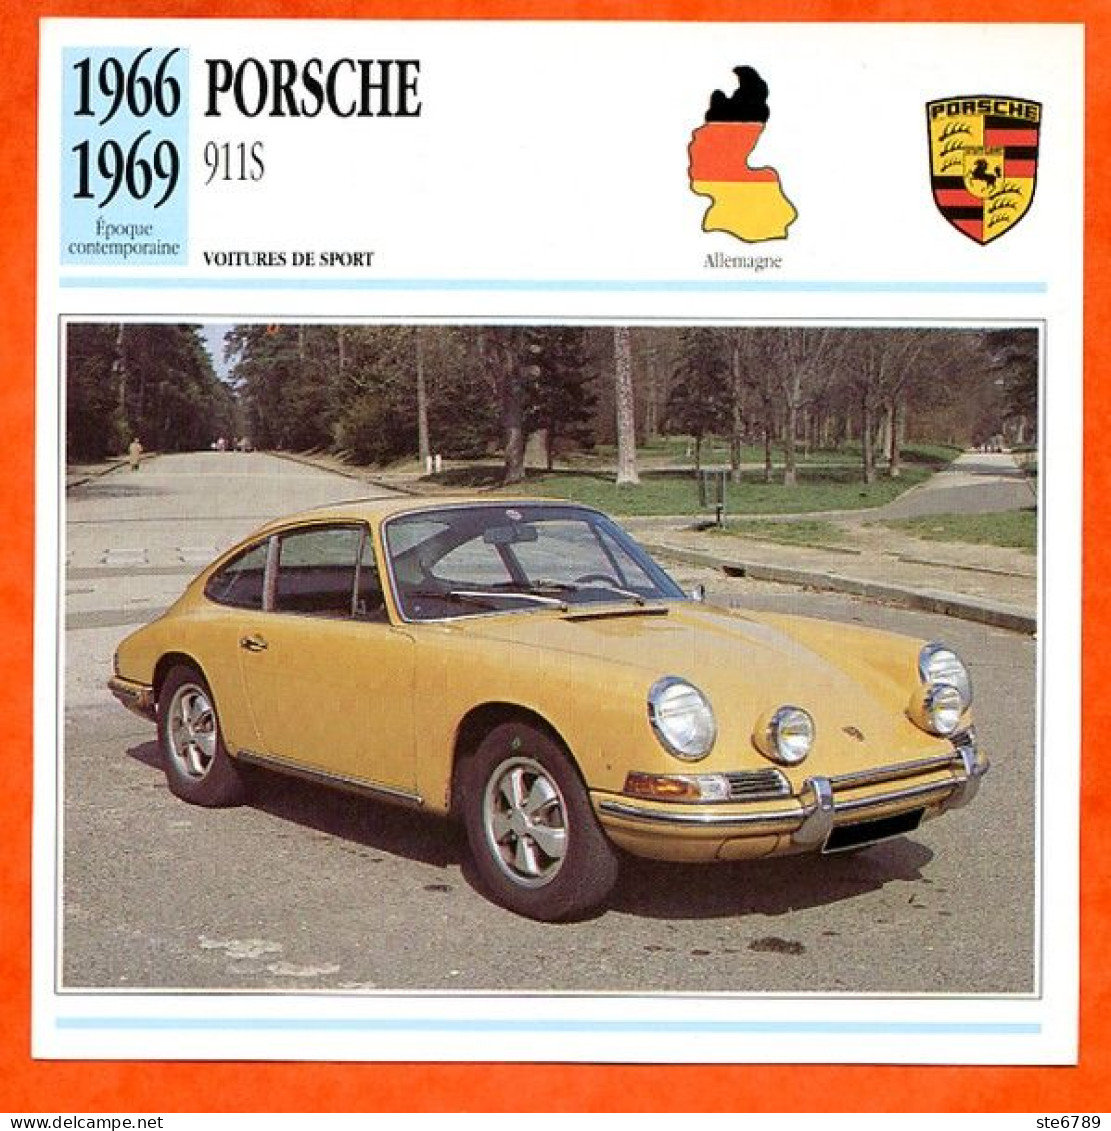 PORSCHE 911 S 1966 Voiture De Sport Allemagne Fiche Technique Automobile - Automobili